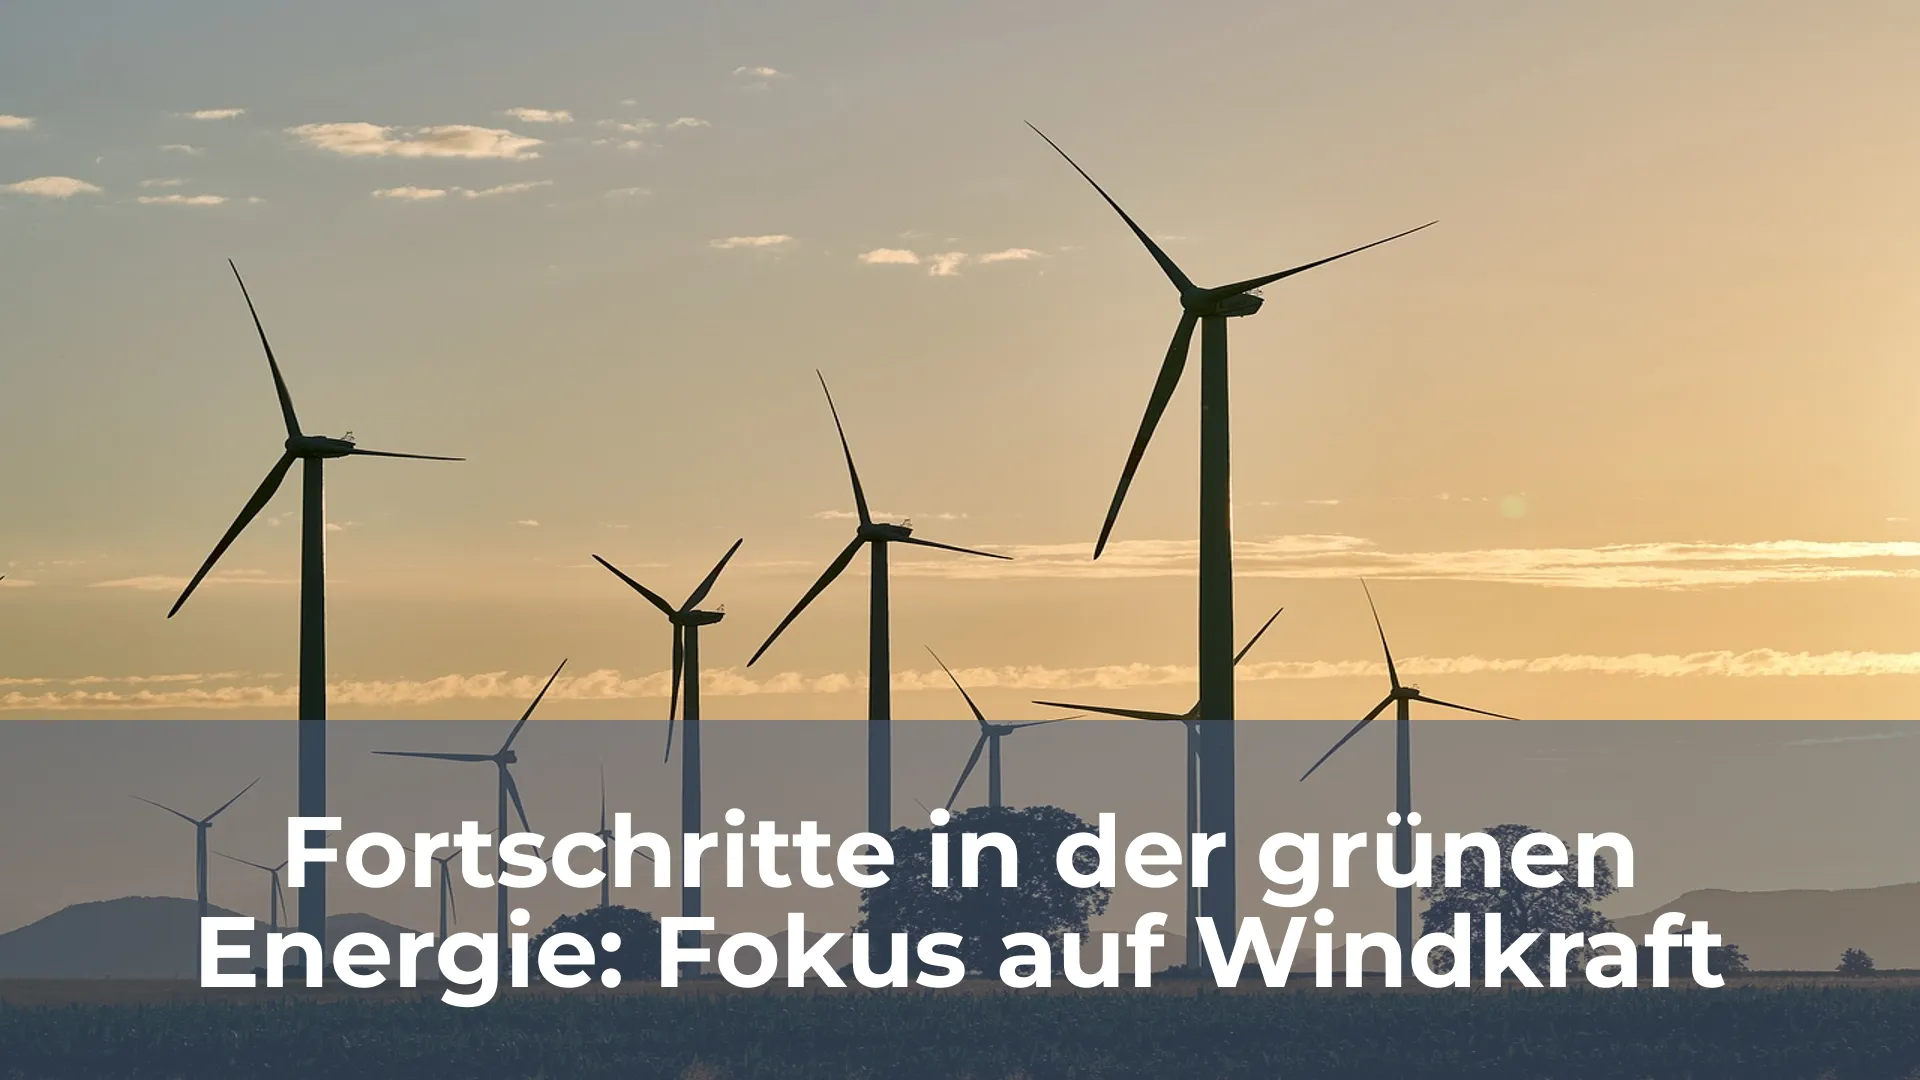 Fortschritte in der grünen energie fokus auf windkraft